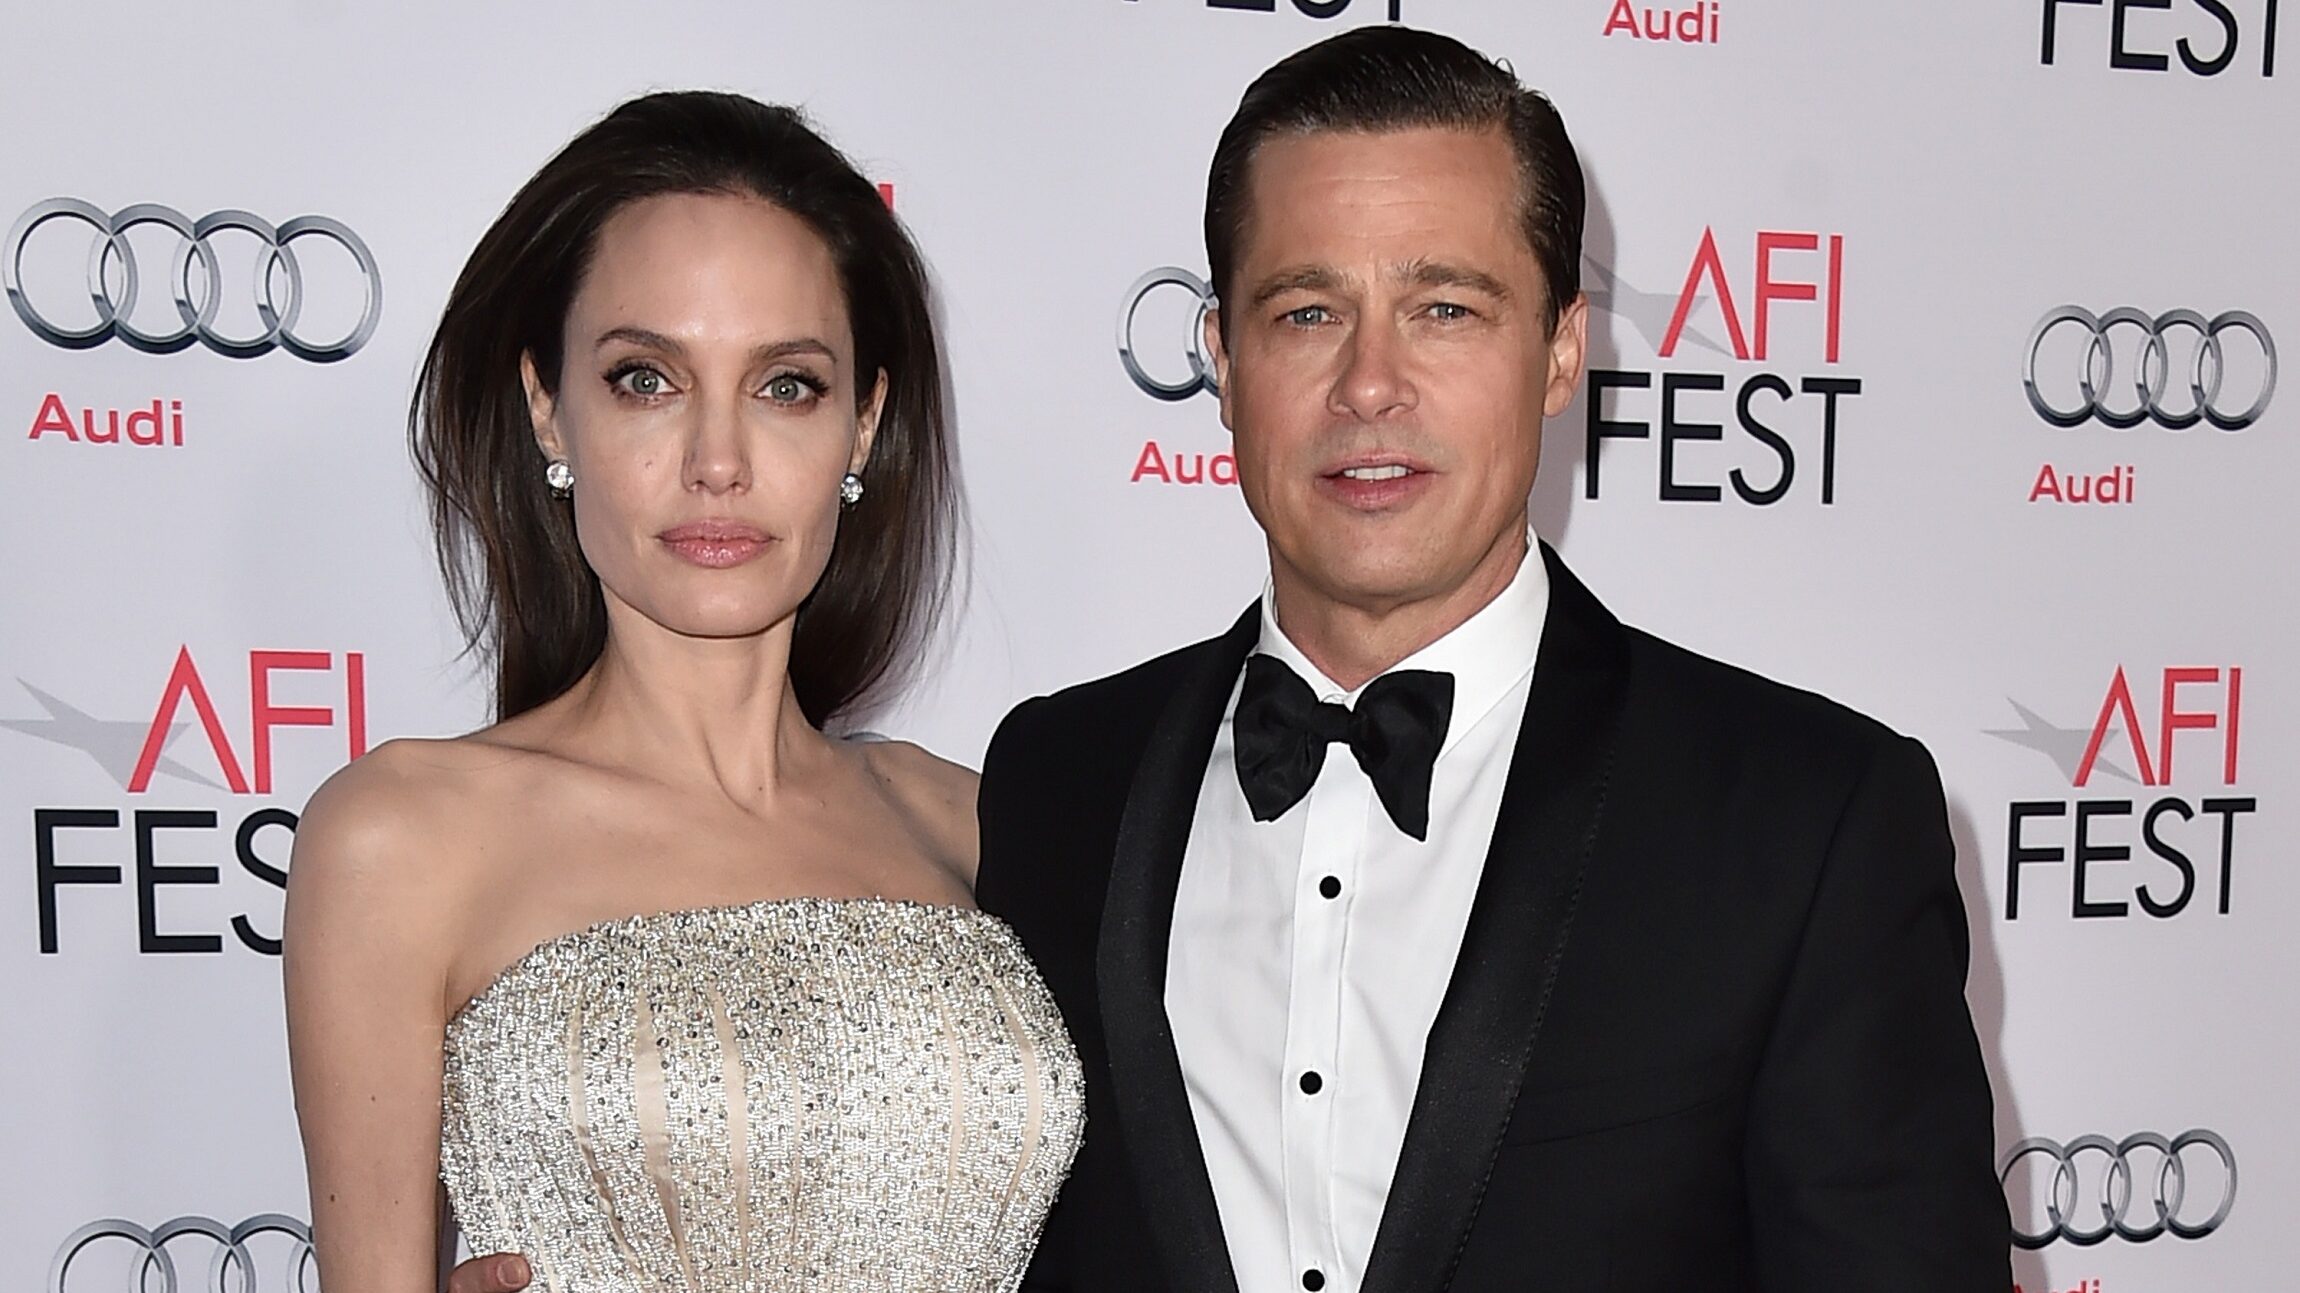 Brad Pitt demanda a Angelina Jolie por presuntamente perjudicar la reputación de su compañía de vinos